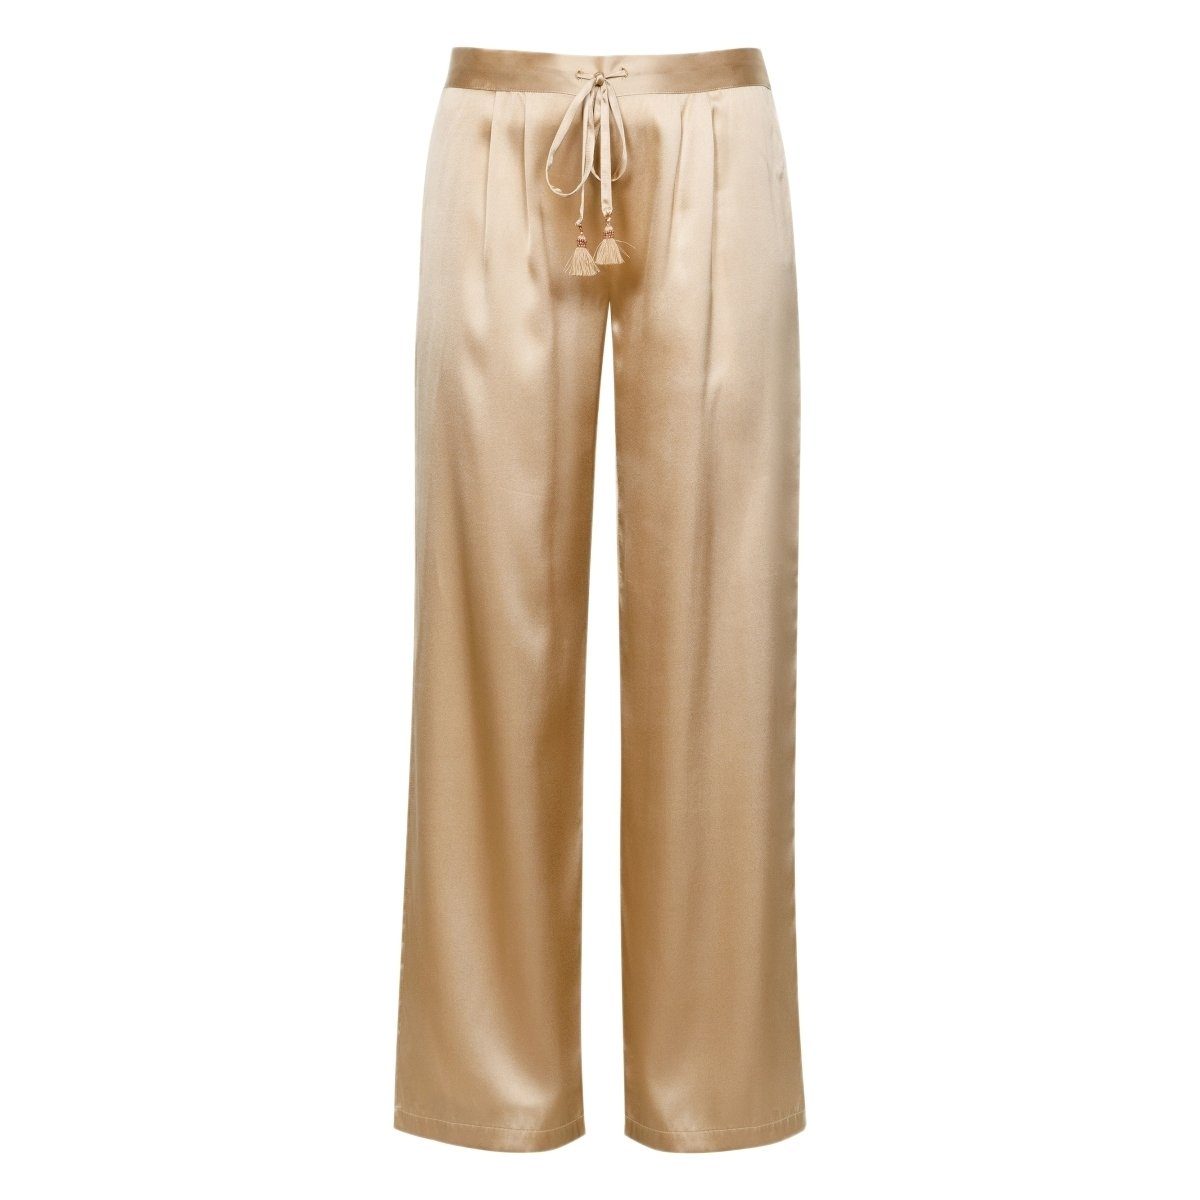 Goldene Hosen für Damen online kaufen » Gold Hosen | OTTO